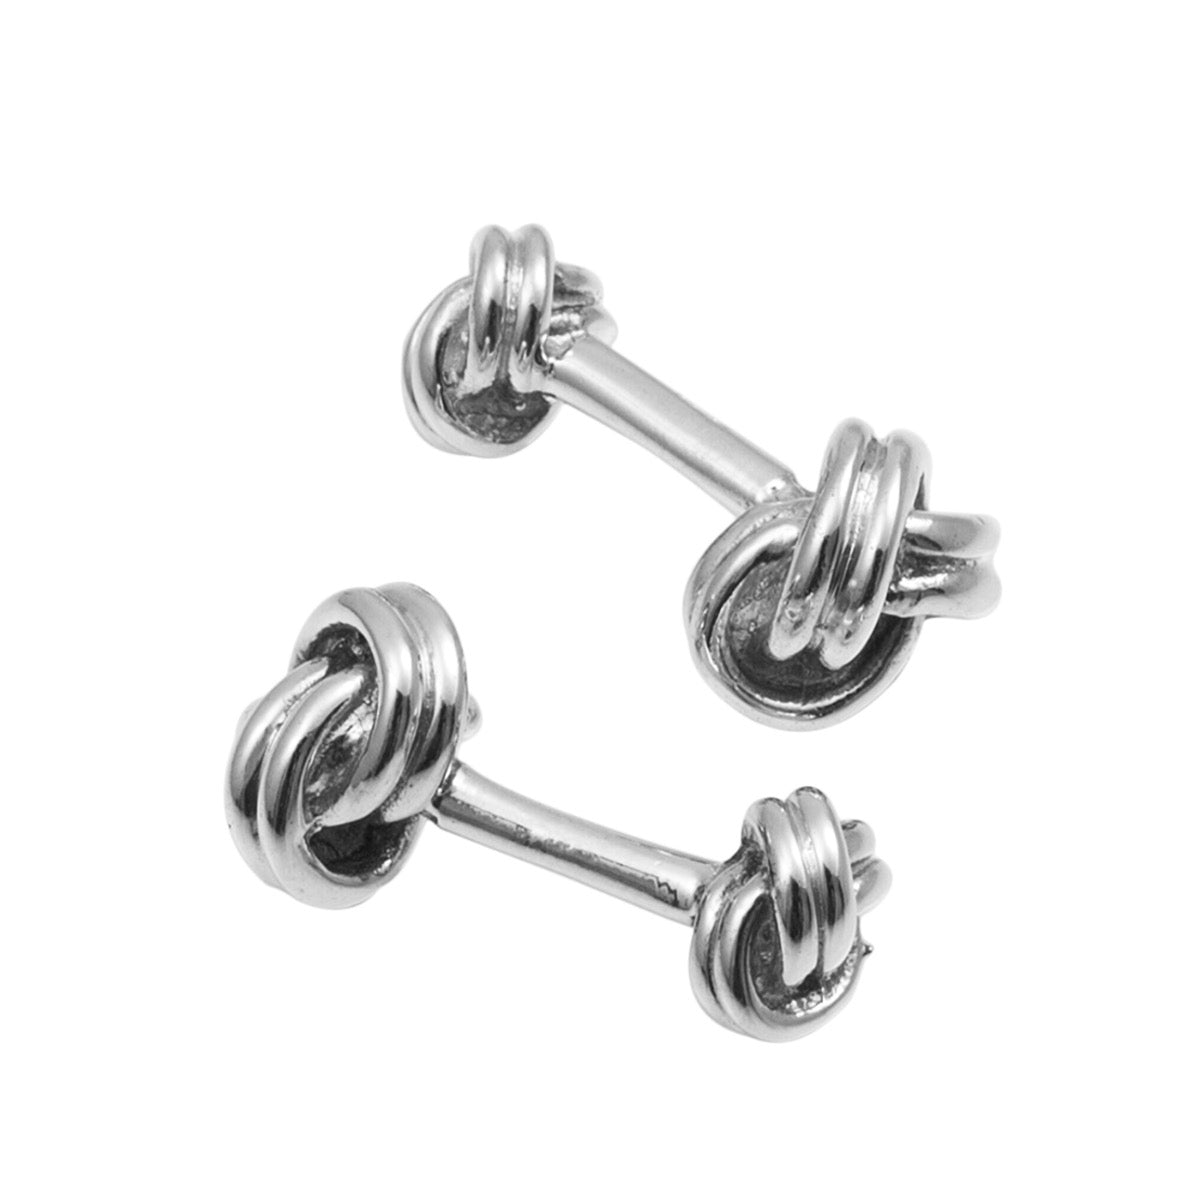 Silver Knot Cufflinks | Hersey & Son Silversmiths